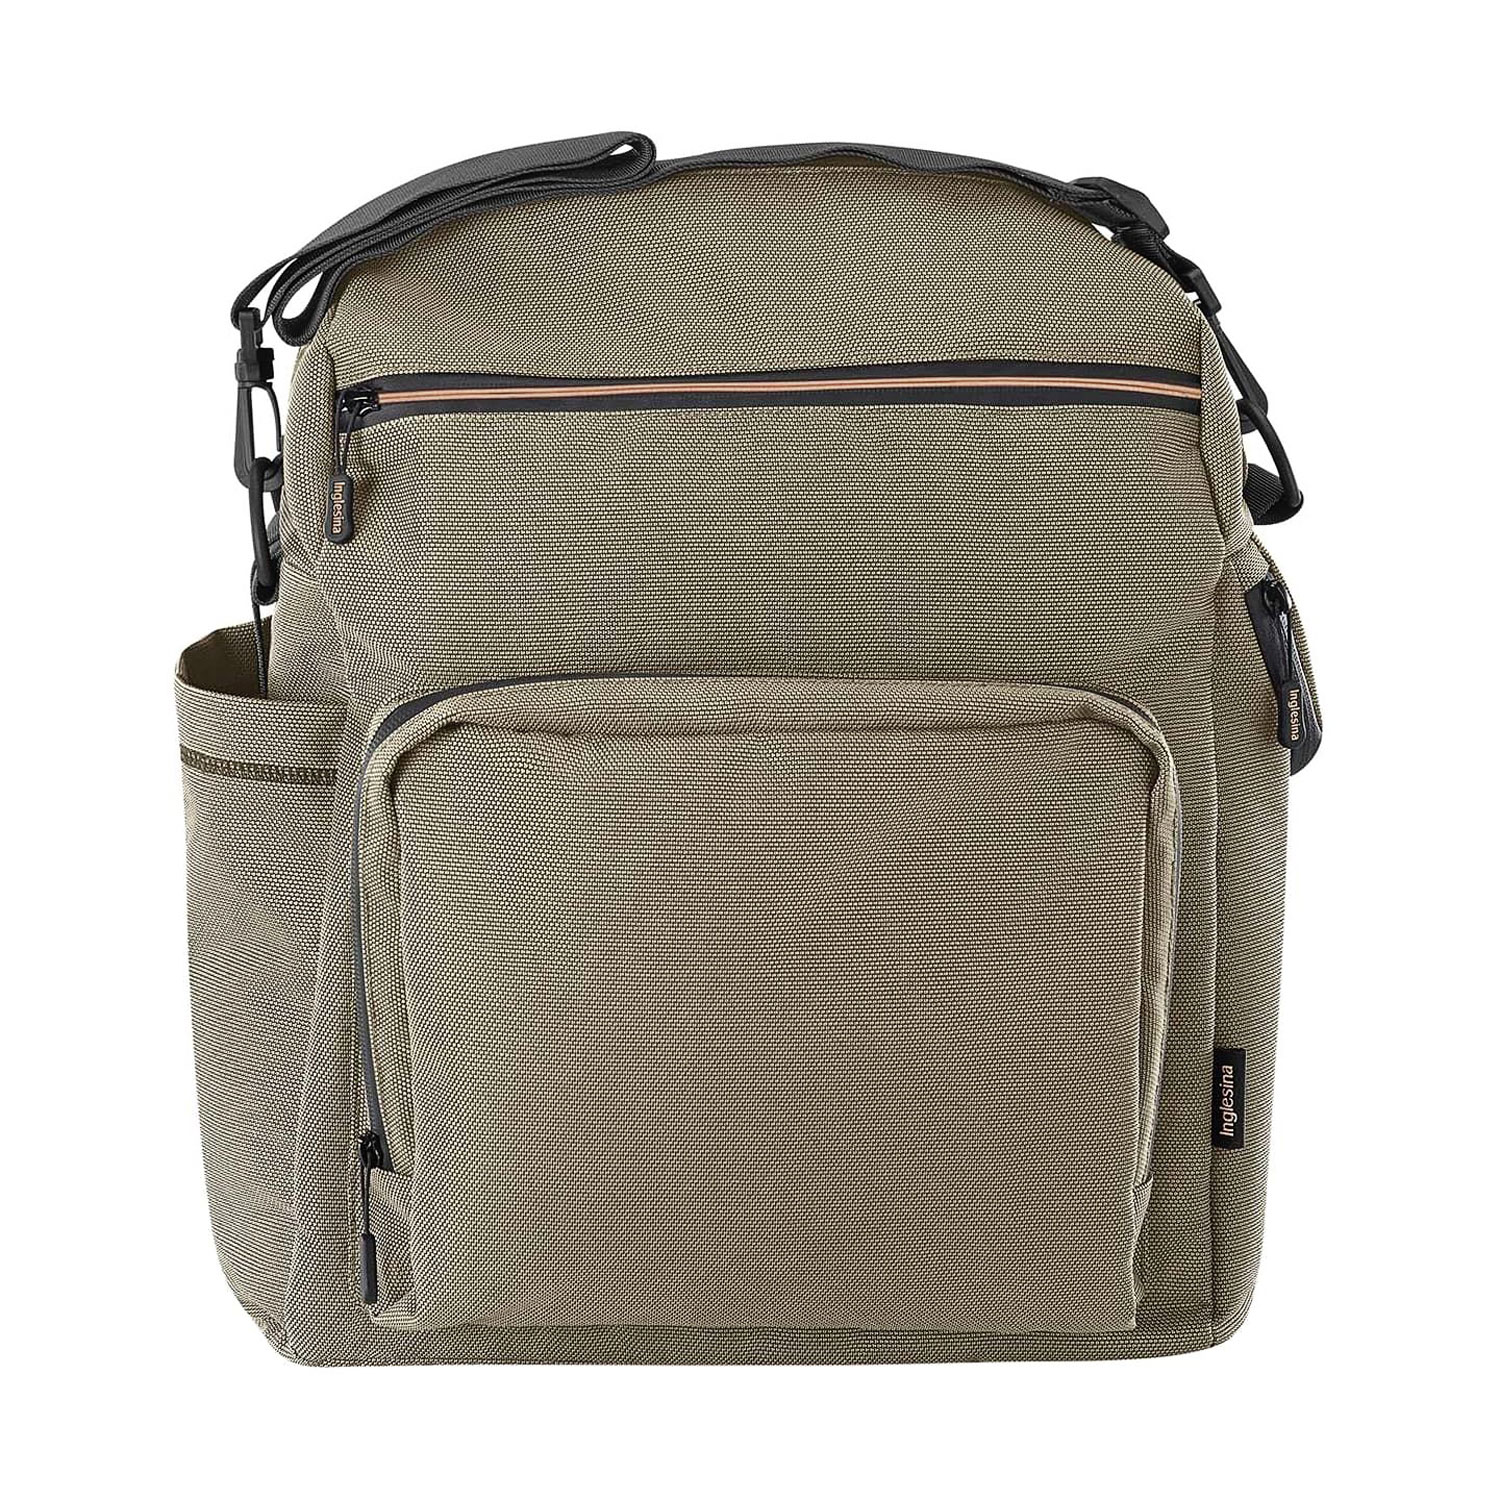 Сумка-рюкзак для коляски ADVENTURE BAG, цвет TUAREG BEIGE Inglesina сумка для планшета 75 55 наплечный ремень картон эстадо